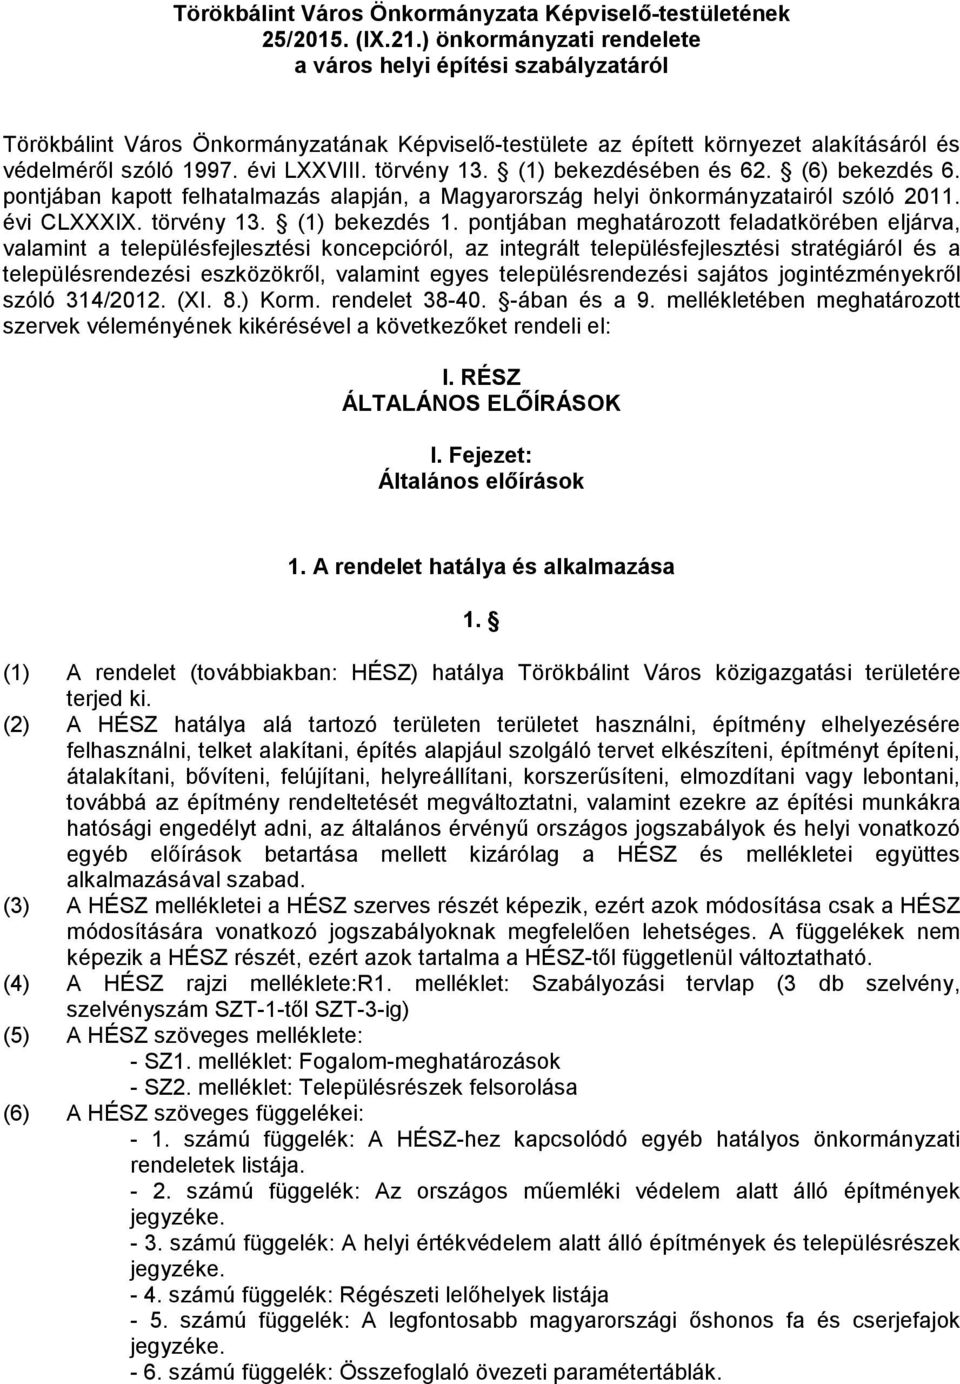 törvény 13. (1) bekezdésében és 62. (6) bekezdés 6. pontjában kapott felhatalmazás alapján, a Magyarország helyi önkormányzatairól szóló 2011. évi CLXXXIX. törvény 13. (1) bekezdés 1.